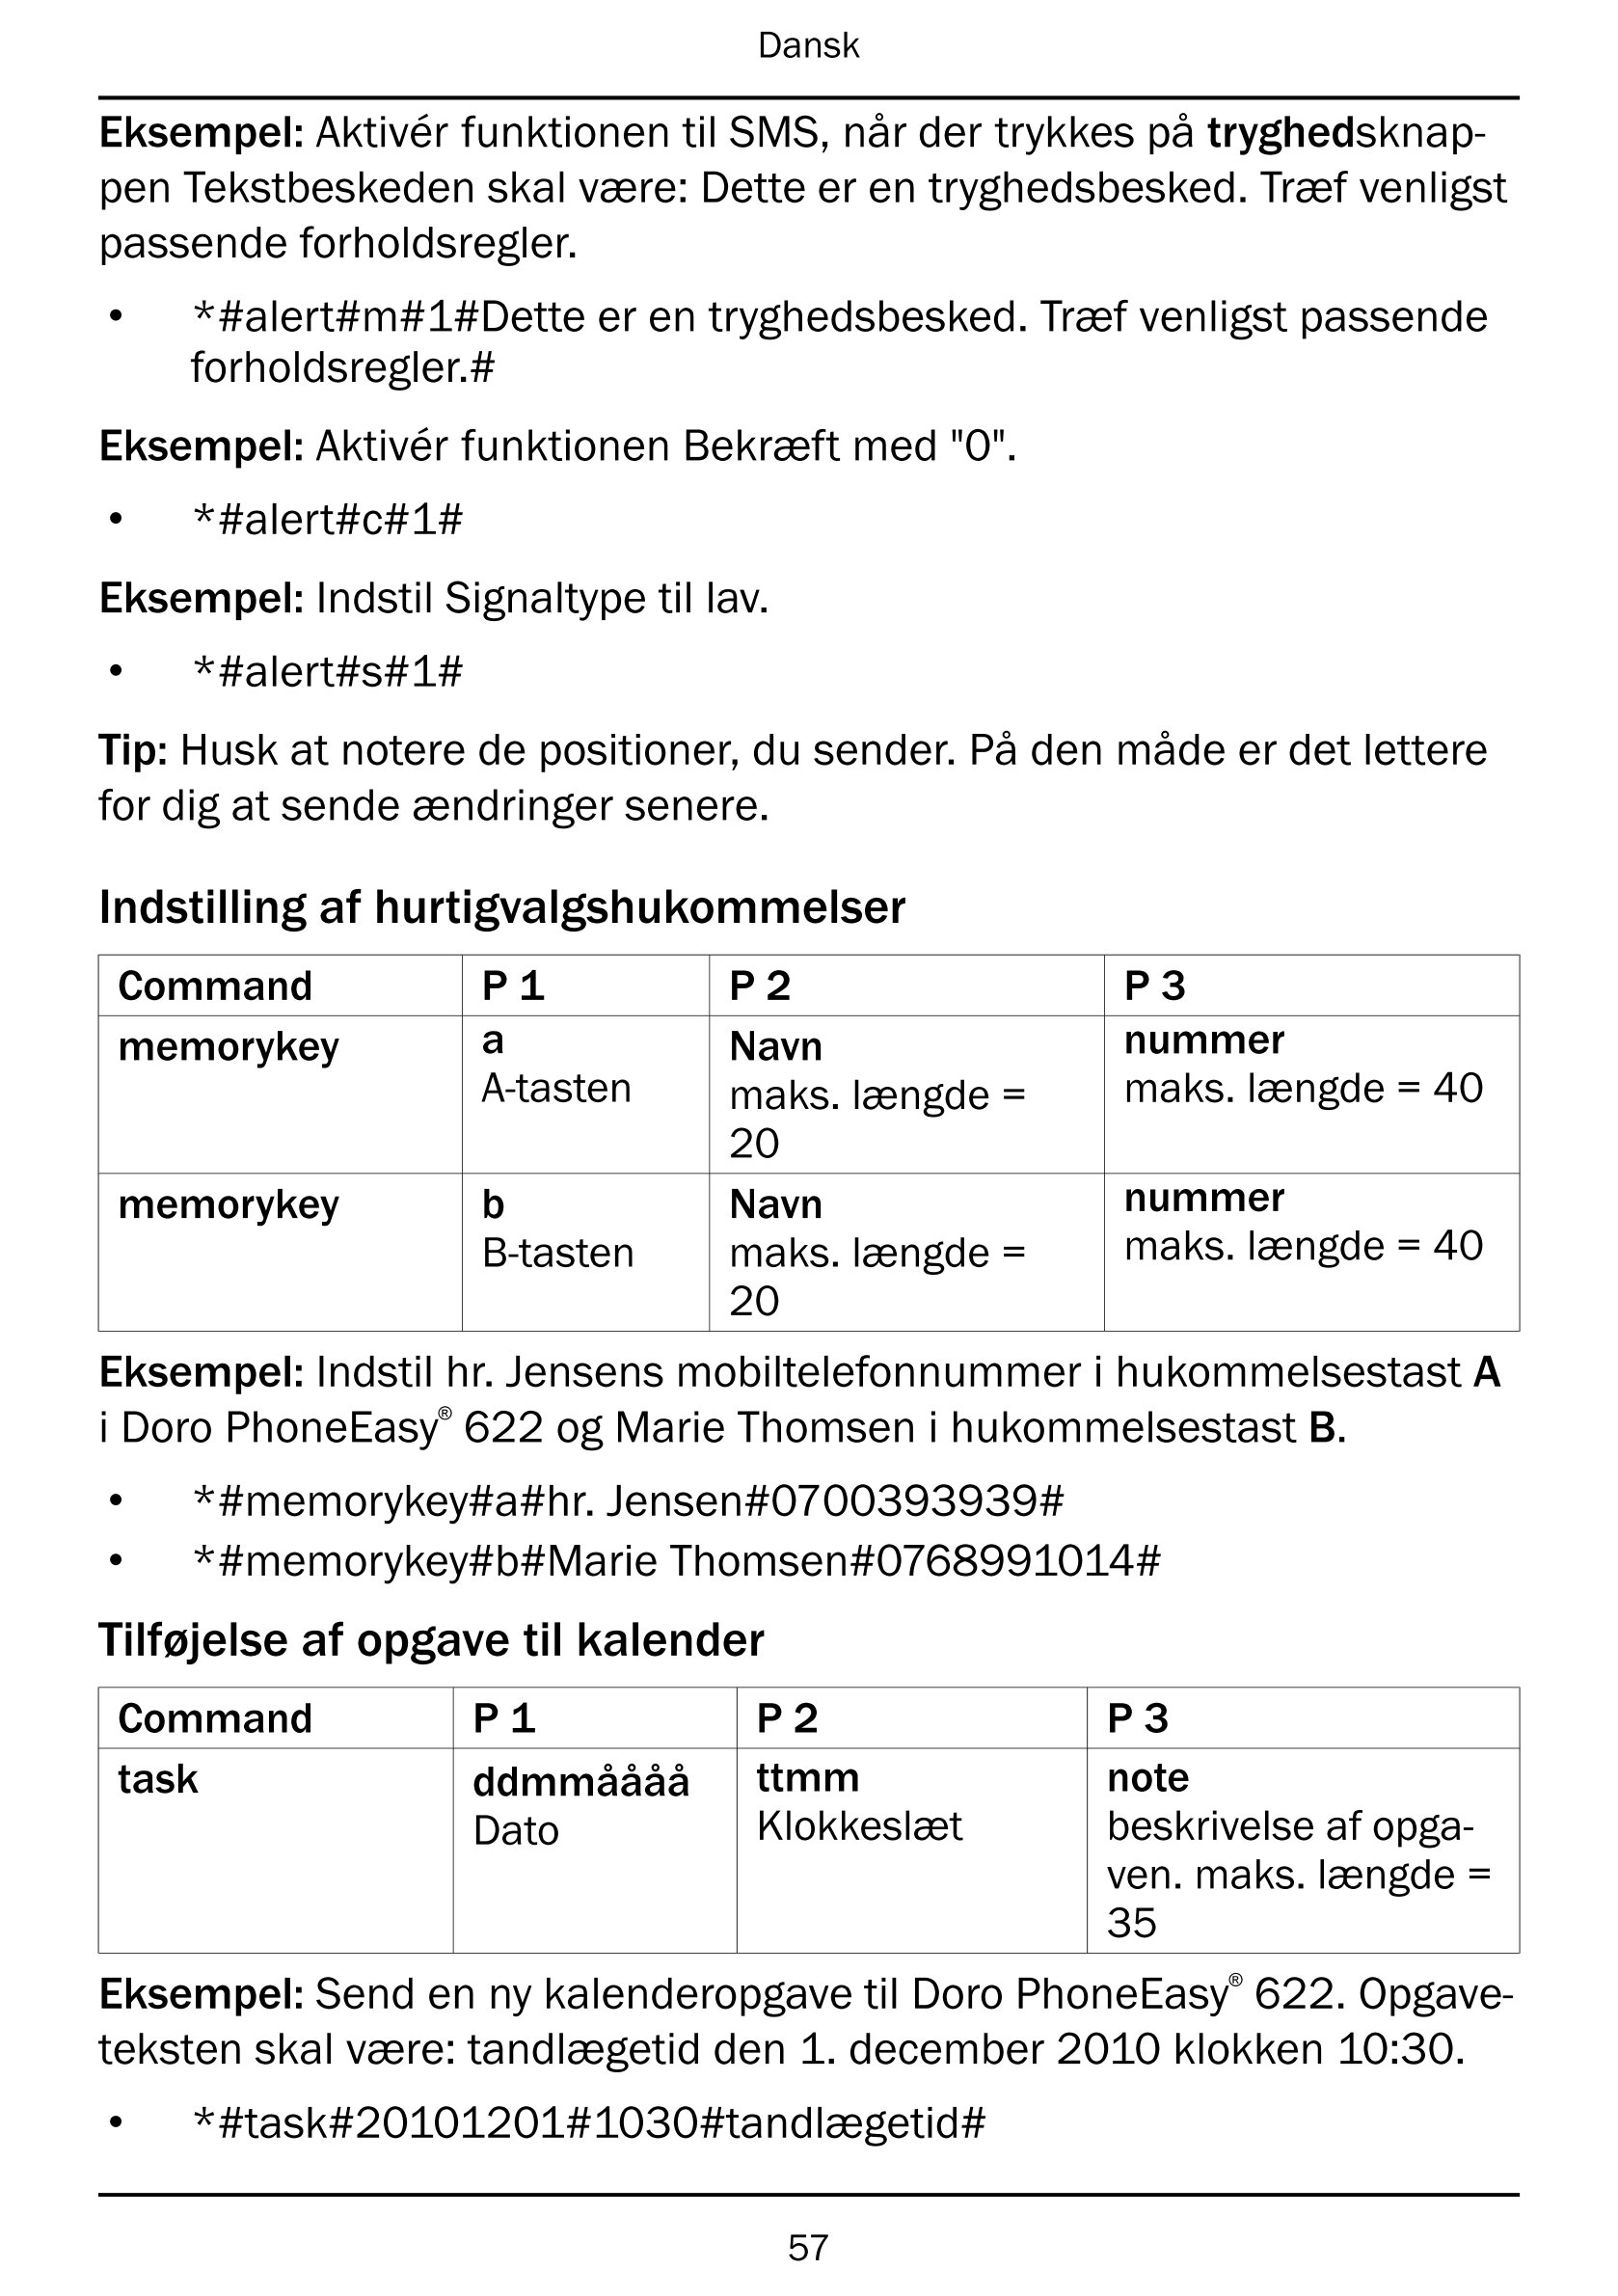 Dansk
Eksempel: Aktivér funktionen til SMS, når der trykkes på tryghedsknap-
pen Tekstbeskeden skal være: Dette er en tryghedsbe